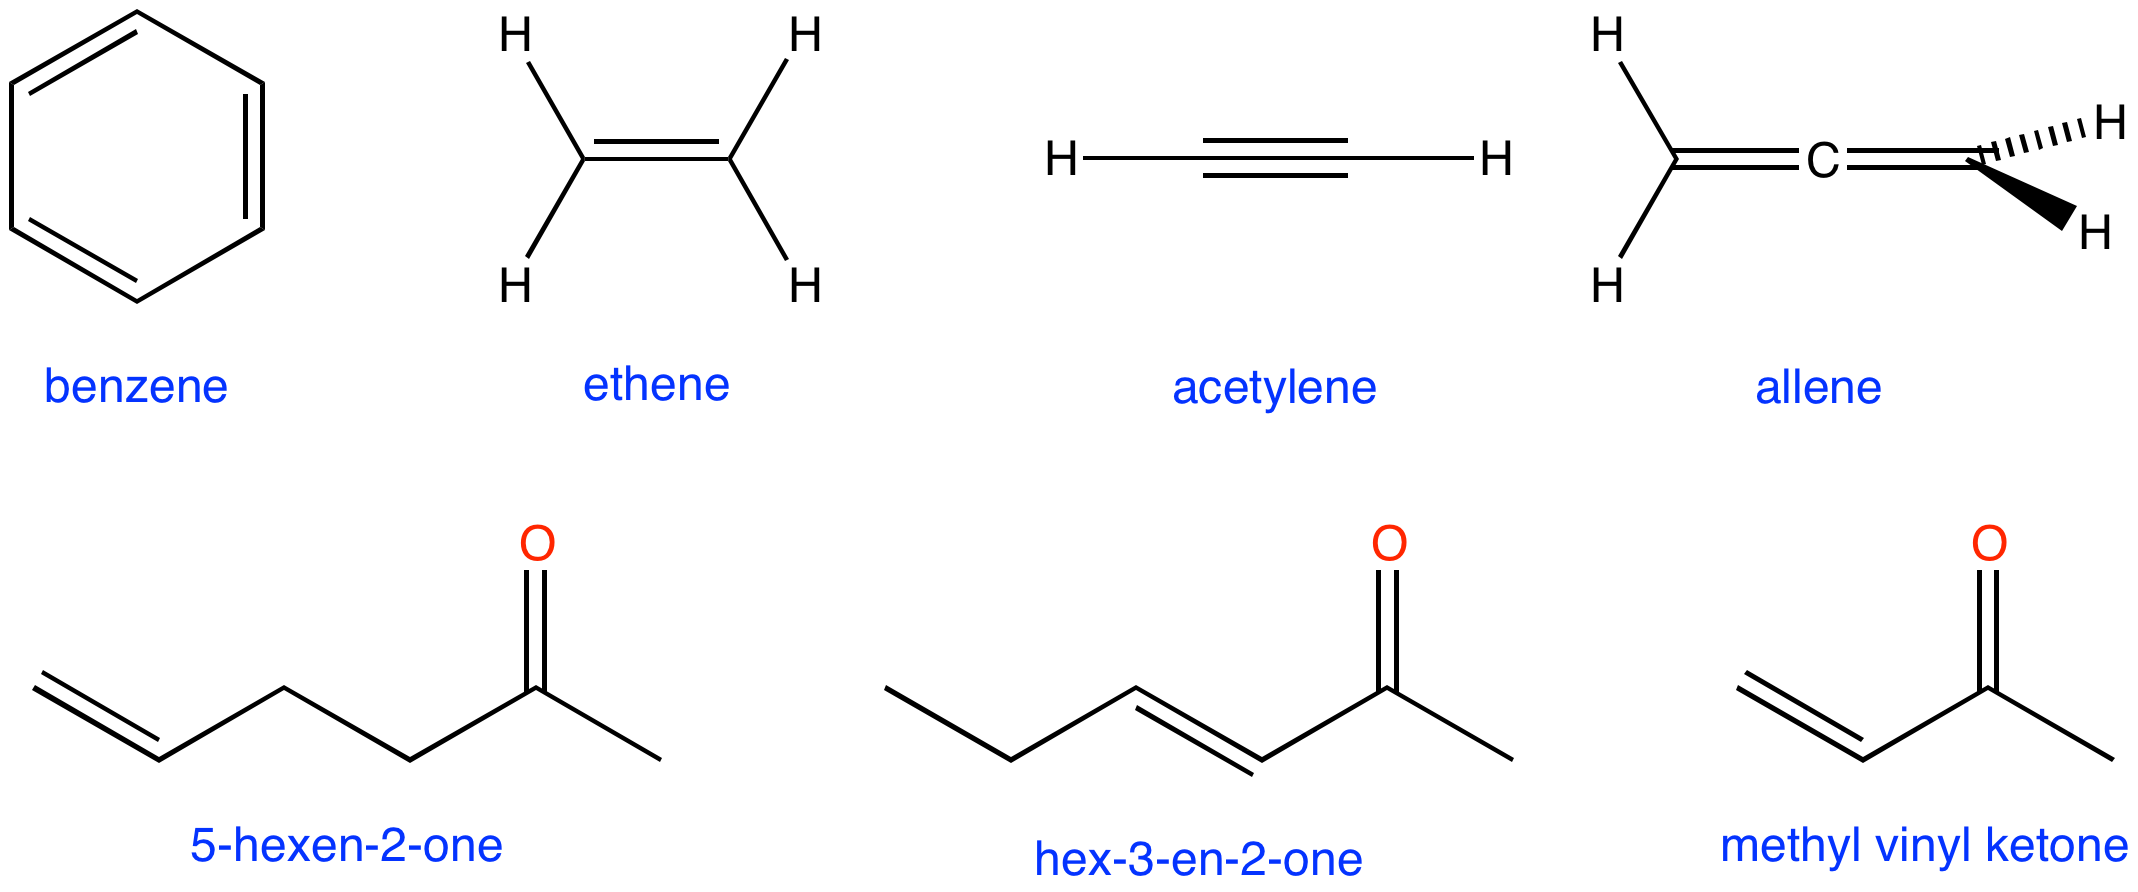 benzene ethene acetylene allene methyl vinyl ketone